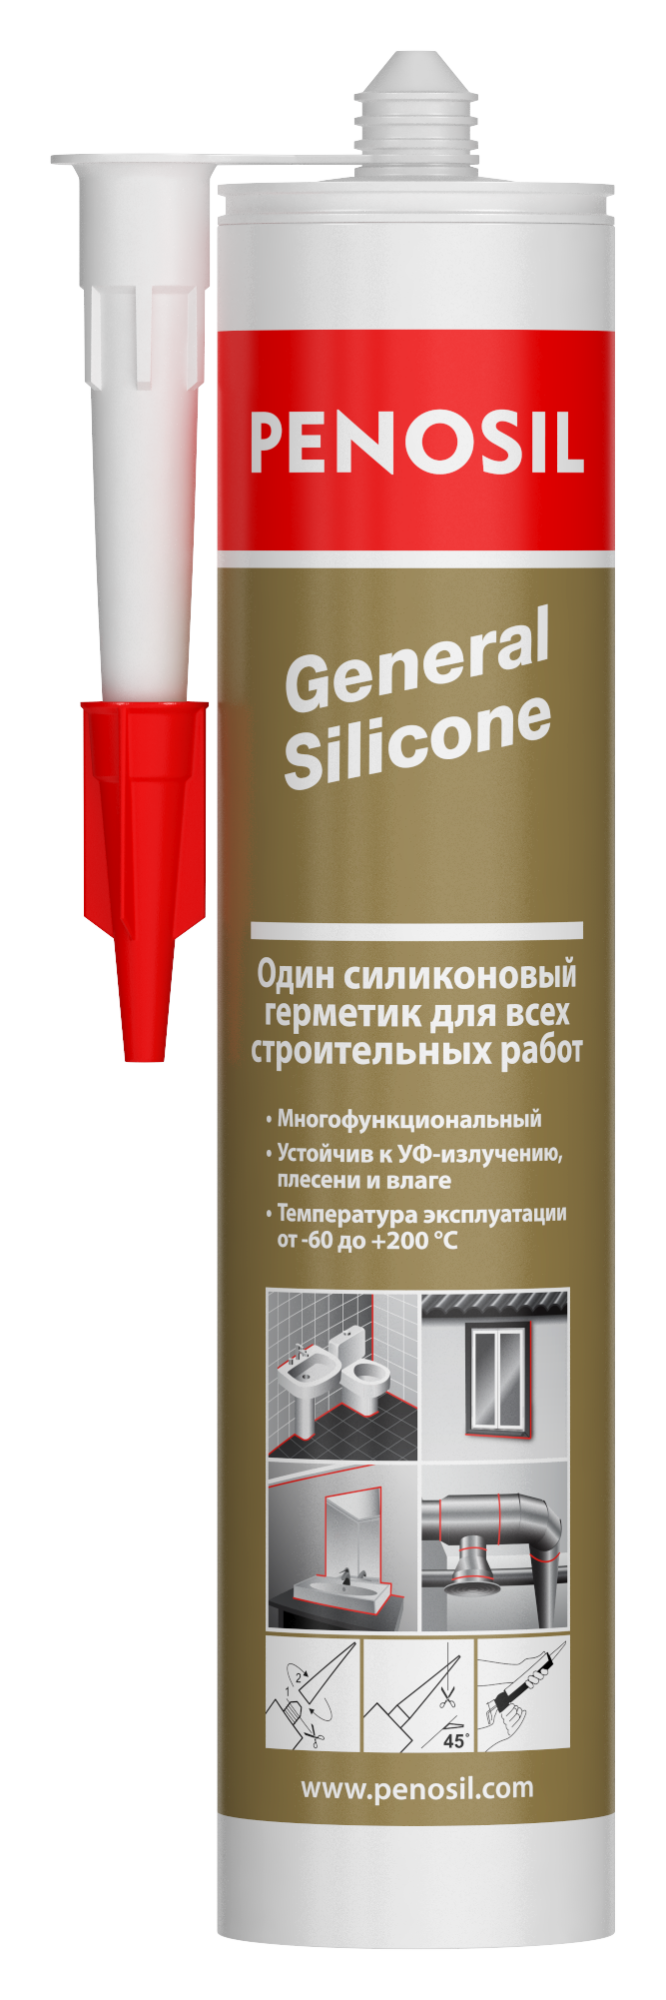 герметик penosil general silicone 310ml прозрачный многоцелевой нейтральный 100%, prostor-market